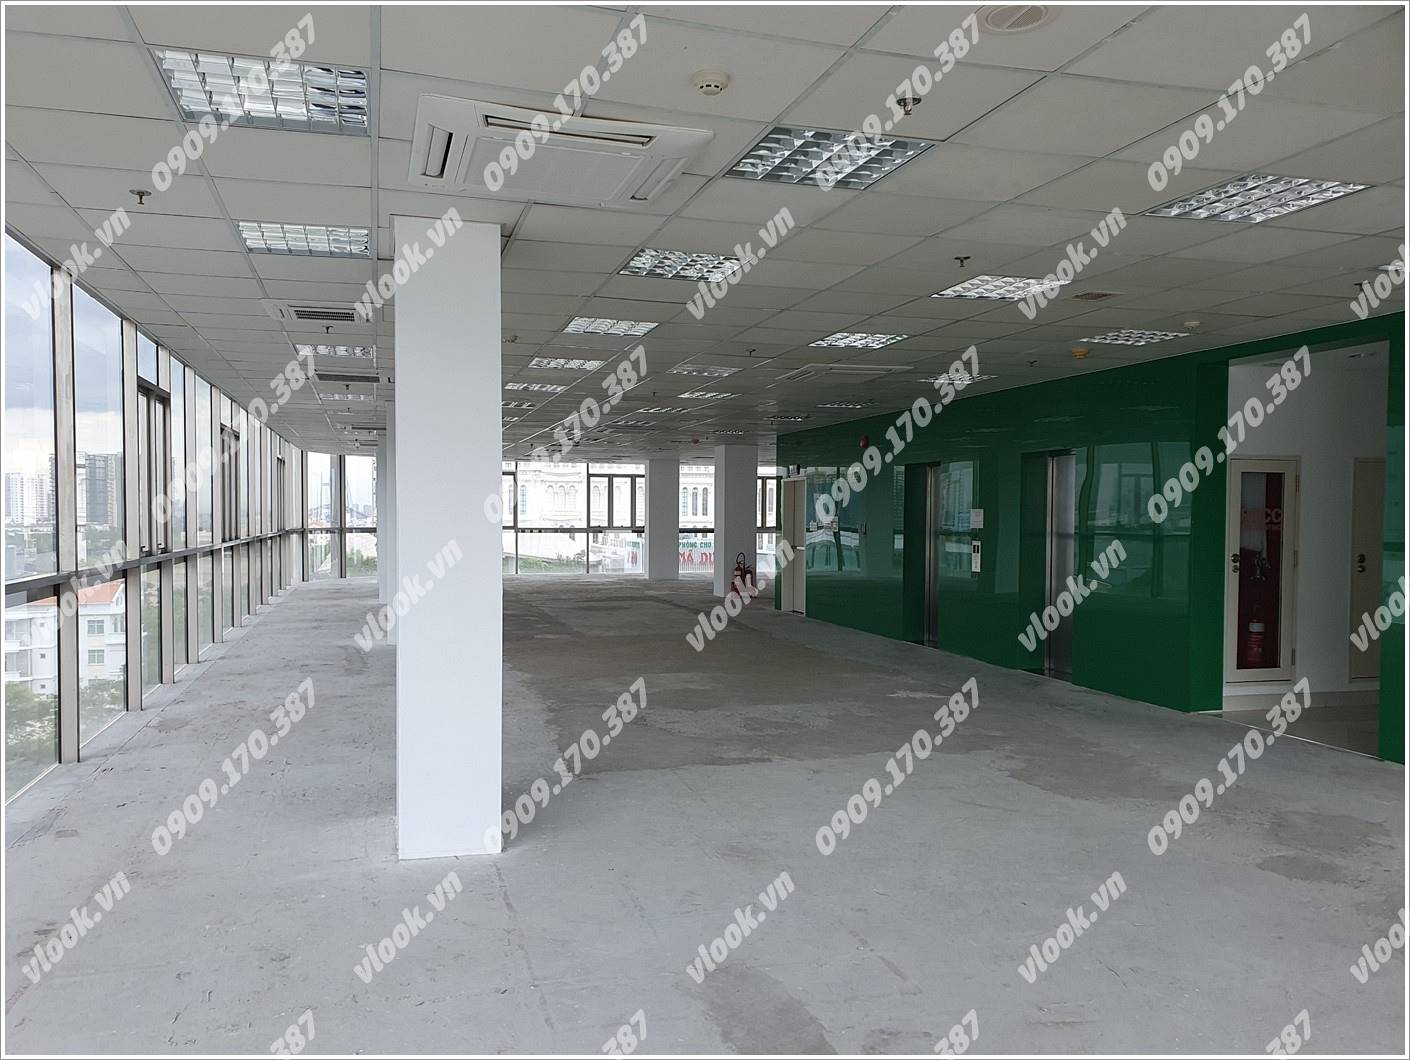 Cao ốc văn phòng cho thuê toà nhà IMV Center, Hoàng Văn Thái, Phường Tân Phú, Quận 7, TPHCM - vlook.vn